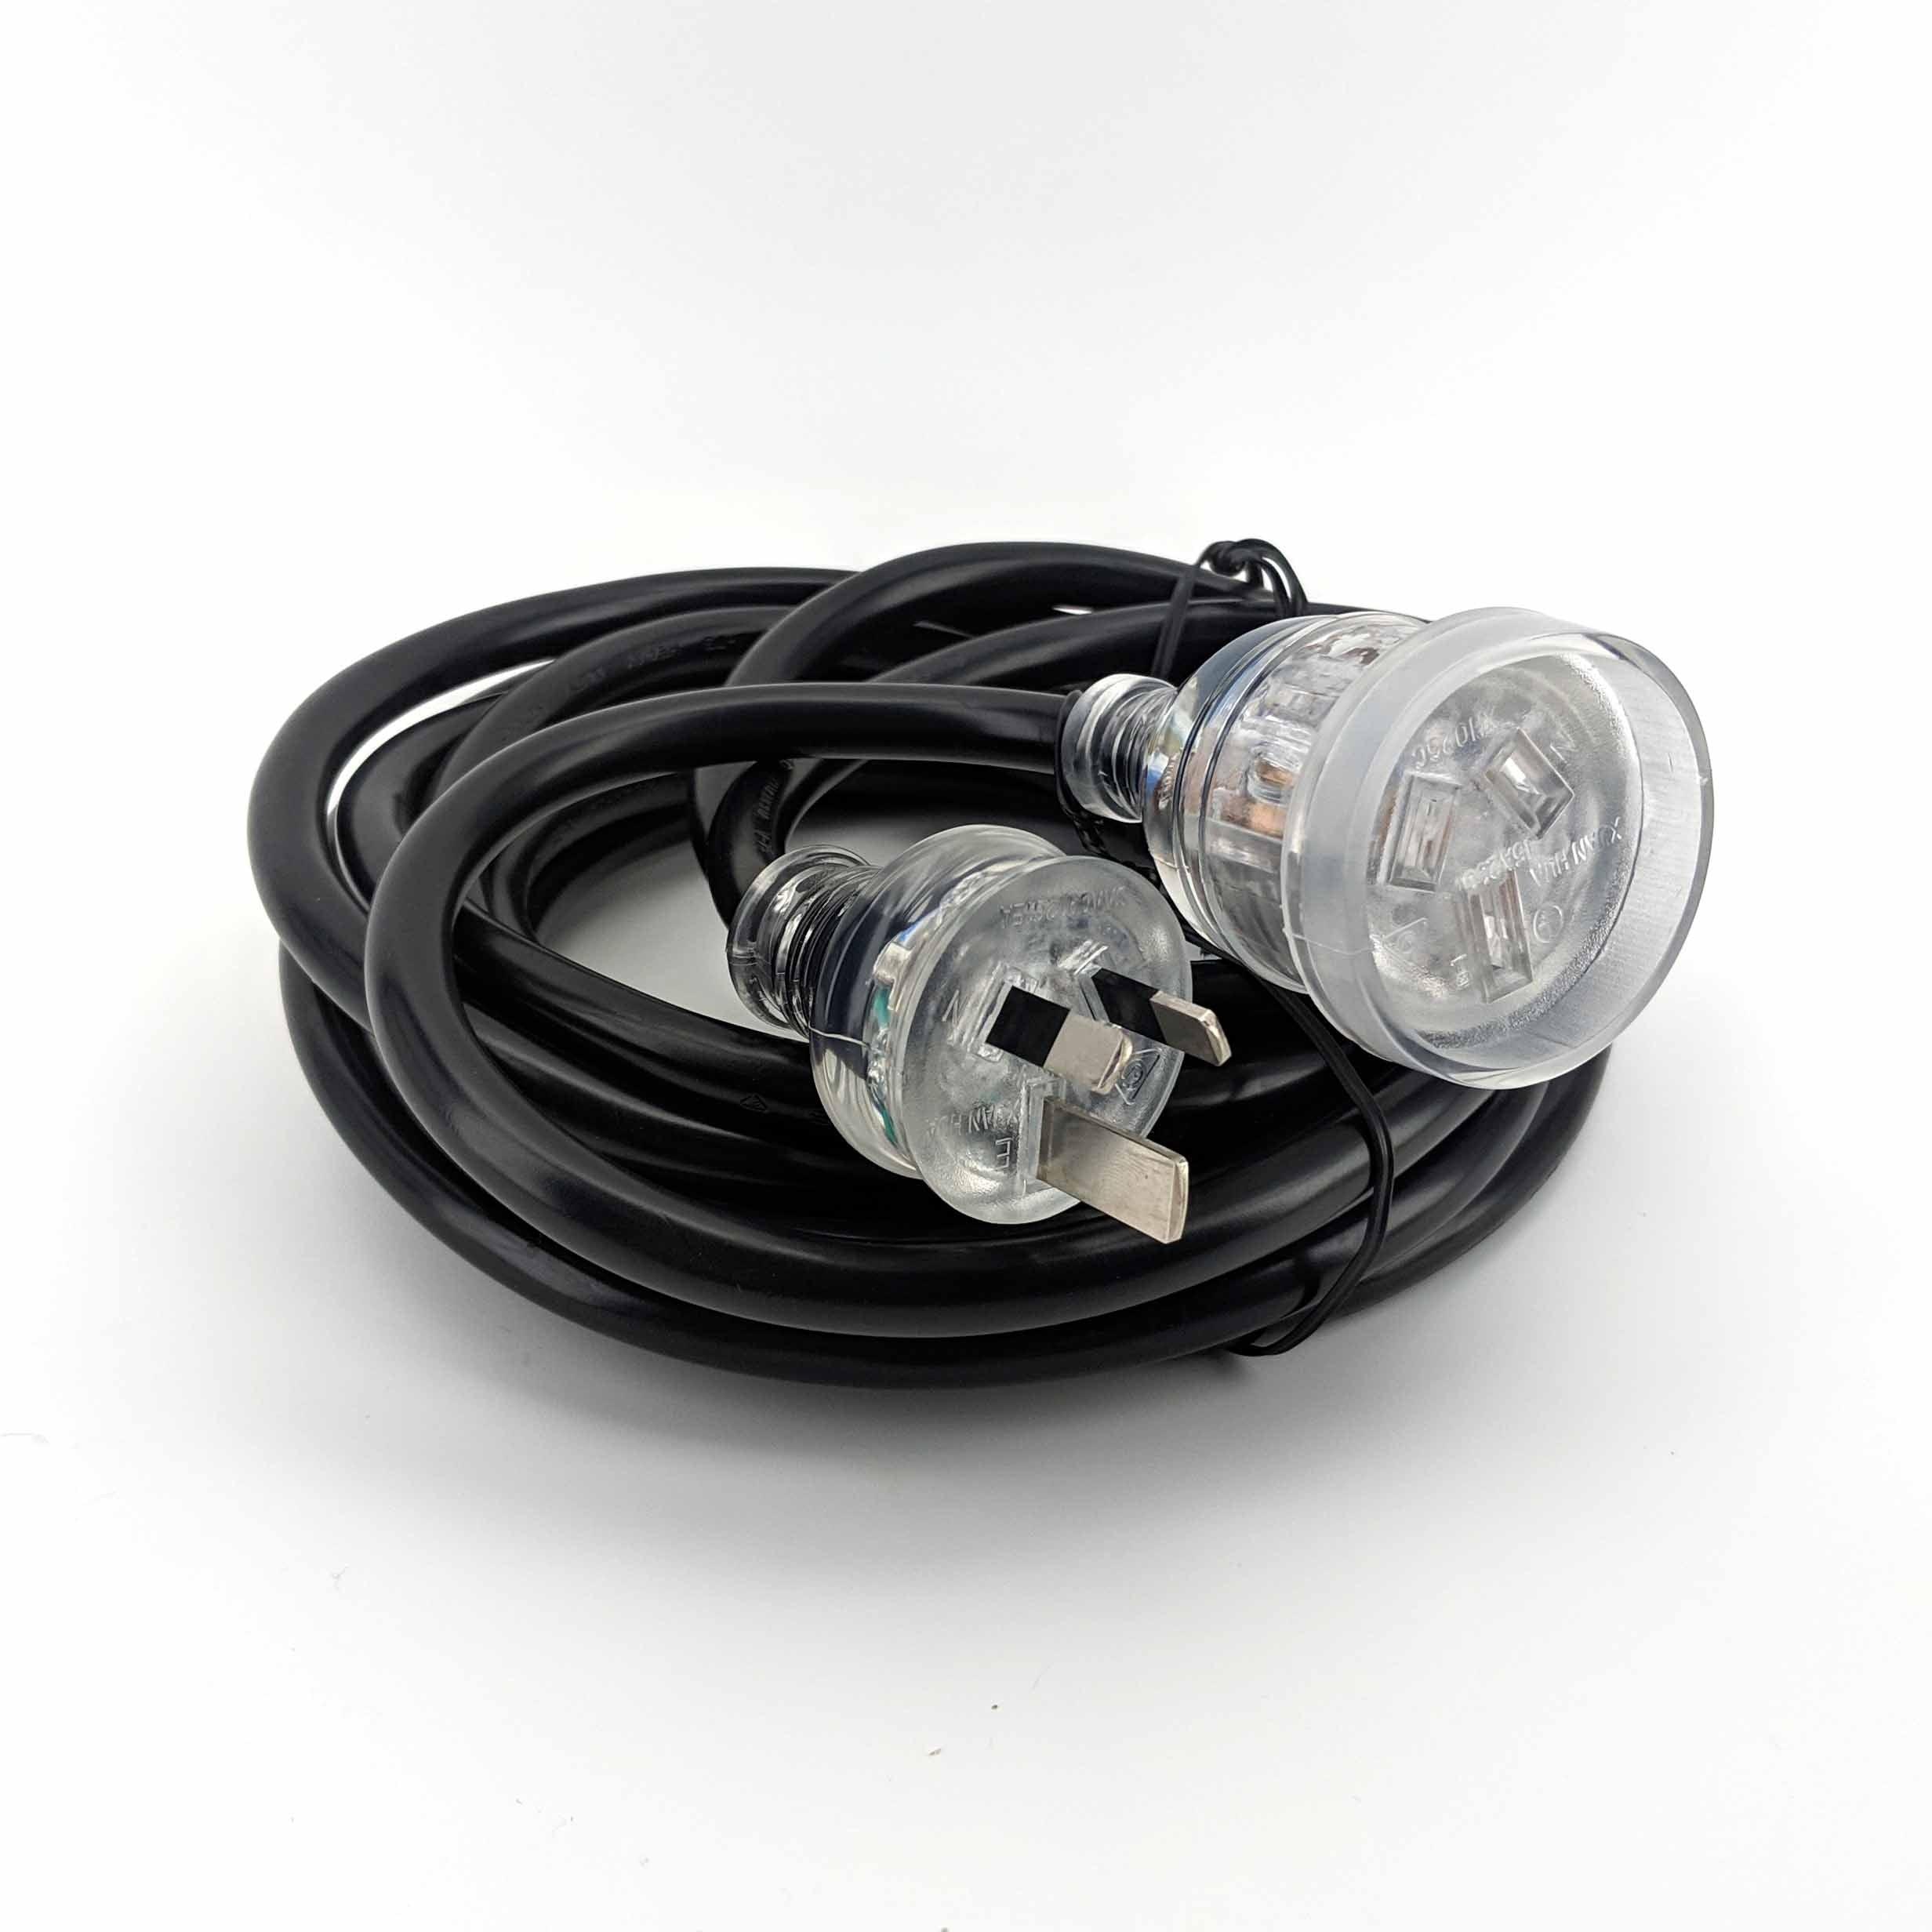 15 amp Extension Lead 5m (with LED Light) (Australian Plug) - KegLand